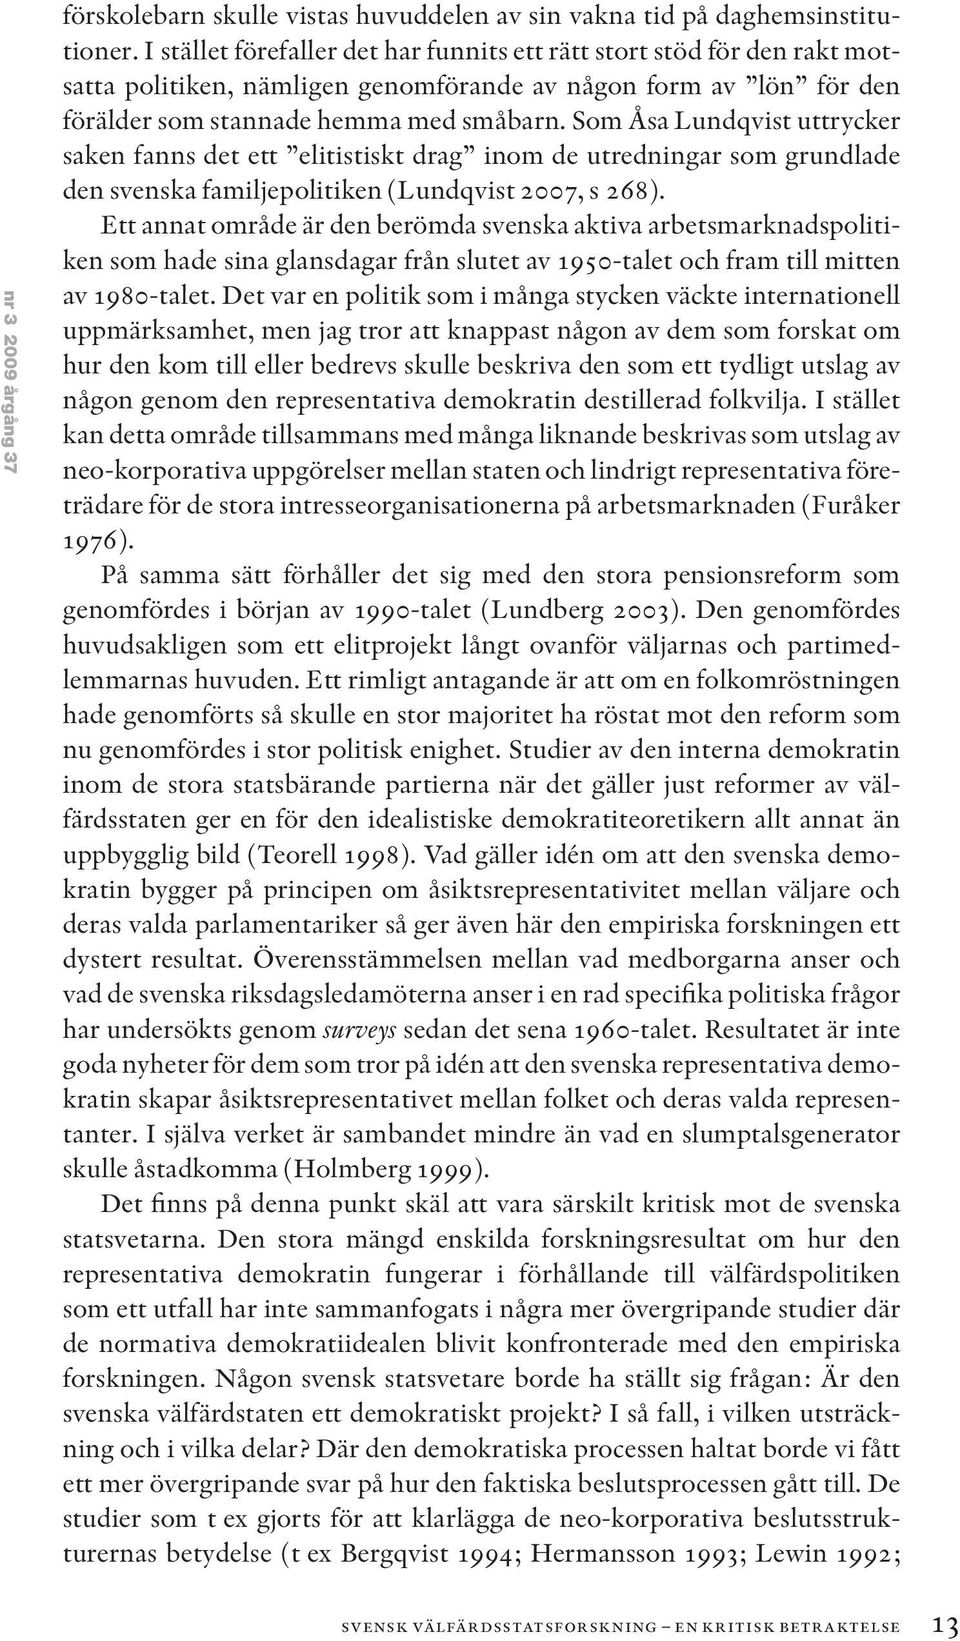 Som Åsa Lundqvist uttrycker saken fanns det ett elitistiskt drag inom de utredningar som grundlade den svenska familjepolitiken (Lundqvist 2007, s 268).